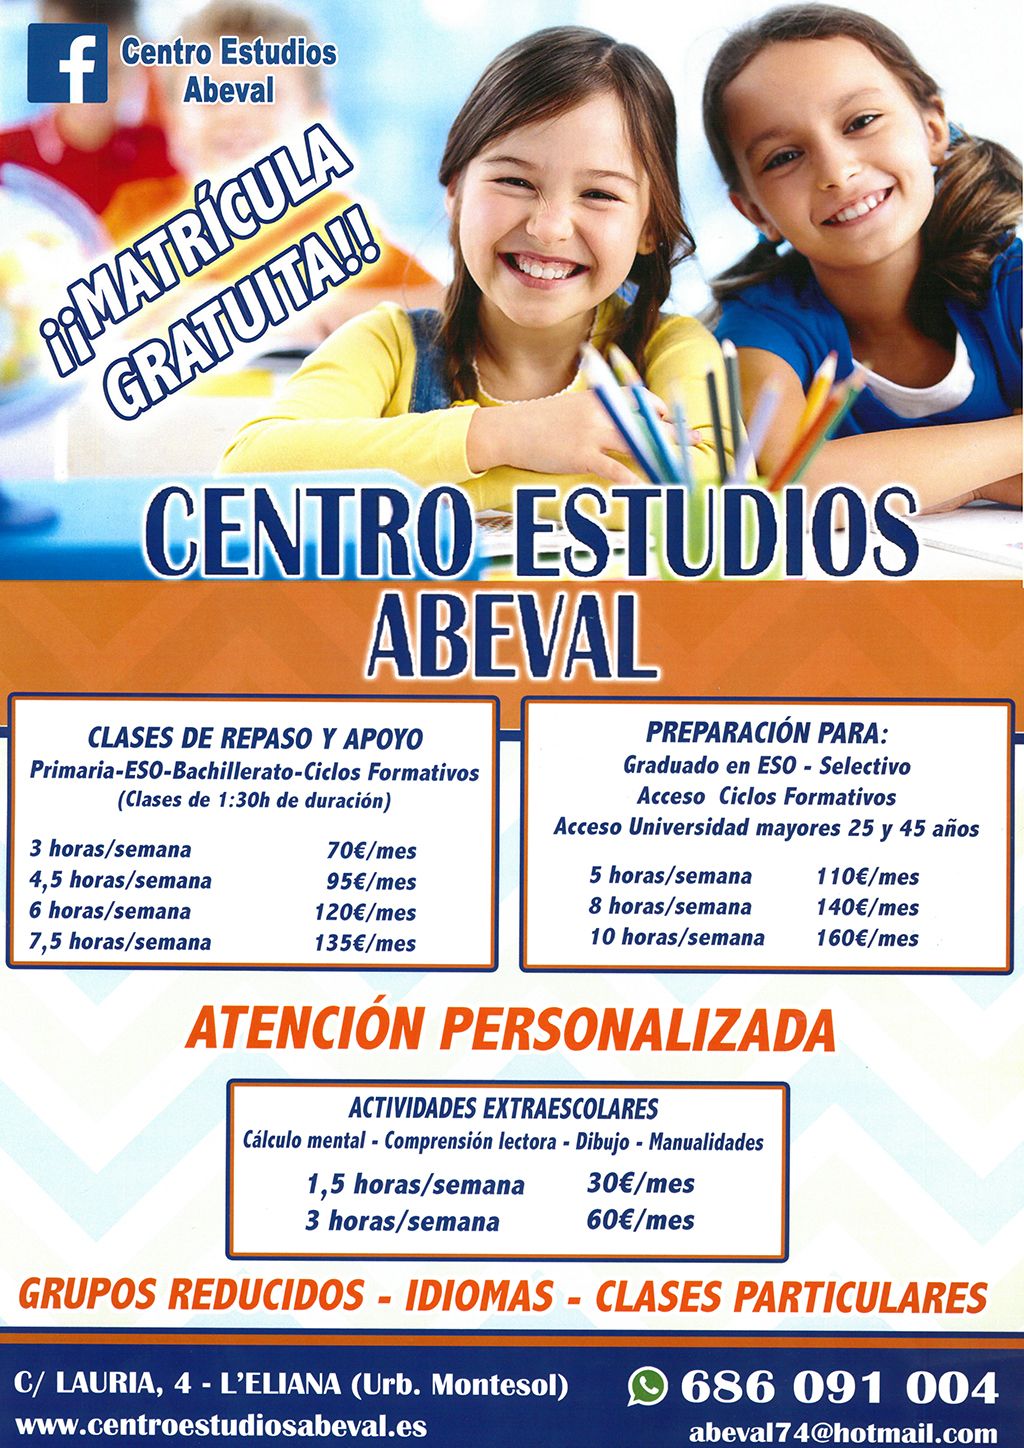 Centro Estudios Abeval precios 2018